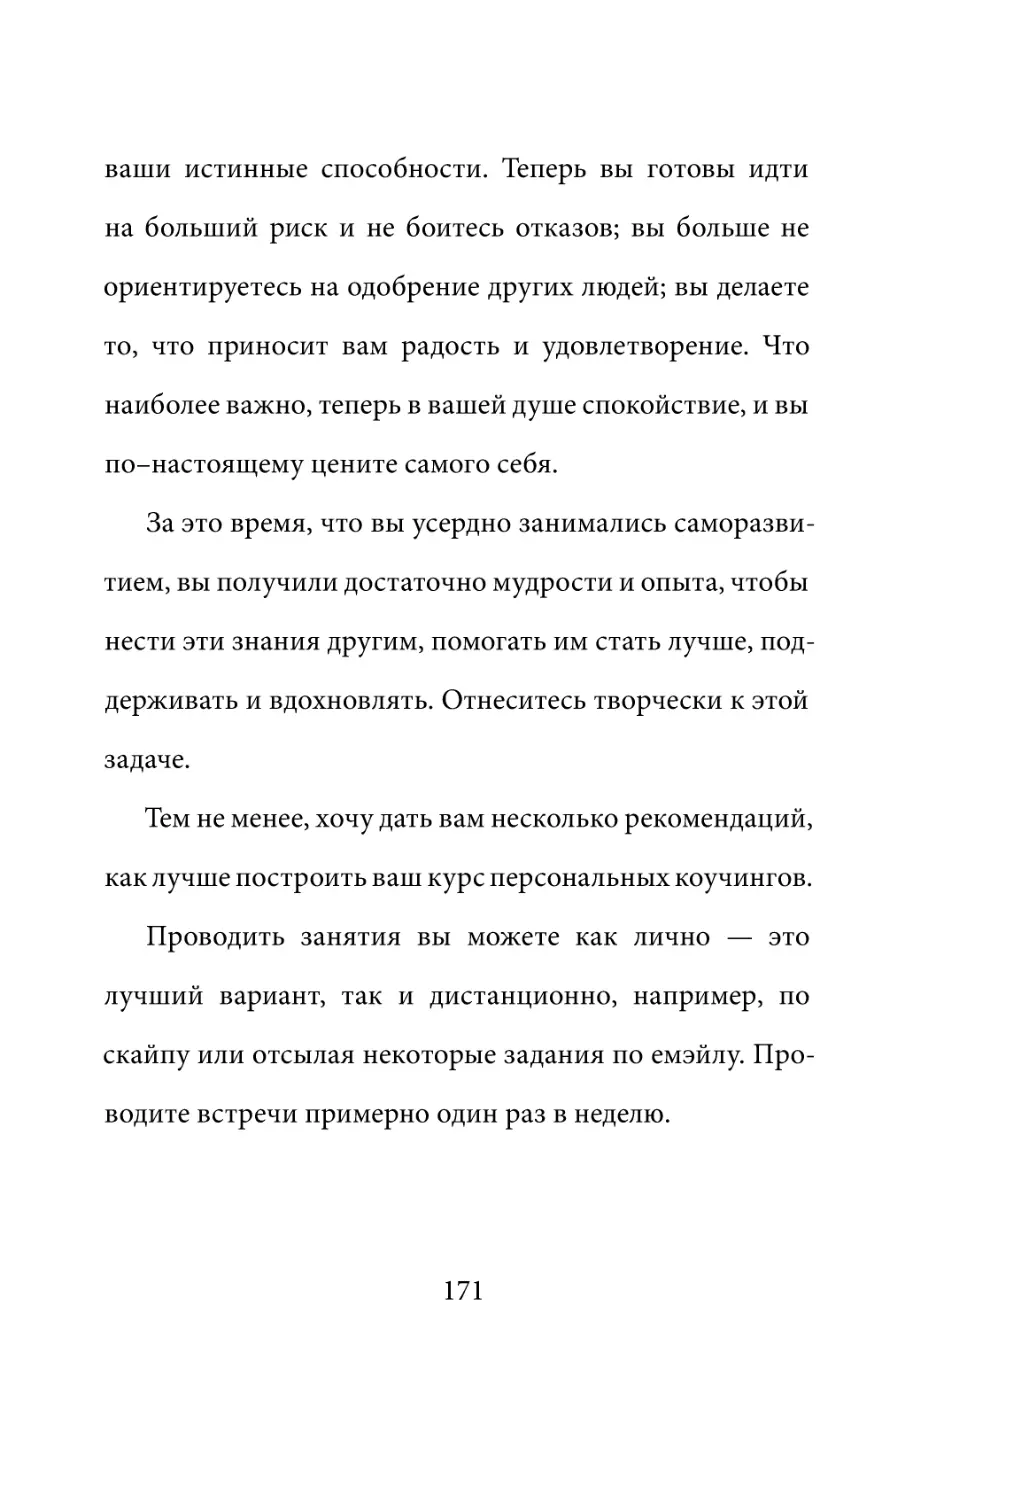 Sergey_Filippov_Dnevnik_samorazvitia_Evolyutsia_Vnutrennego_Sostoyania_171.pdf (p.171)